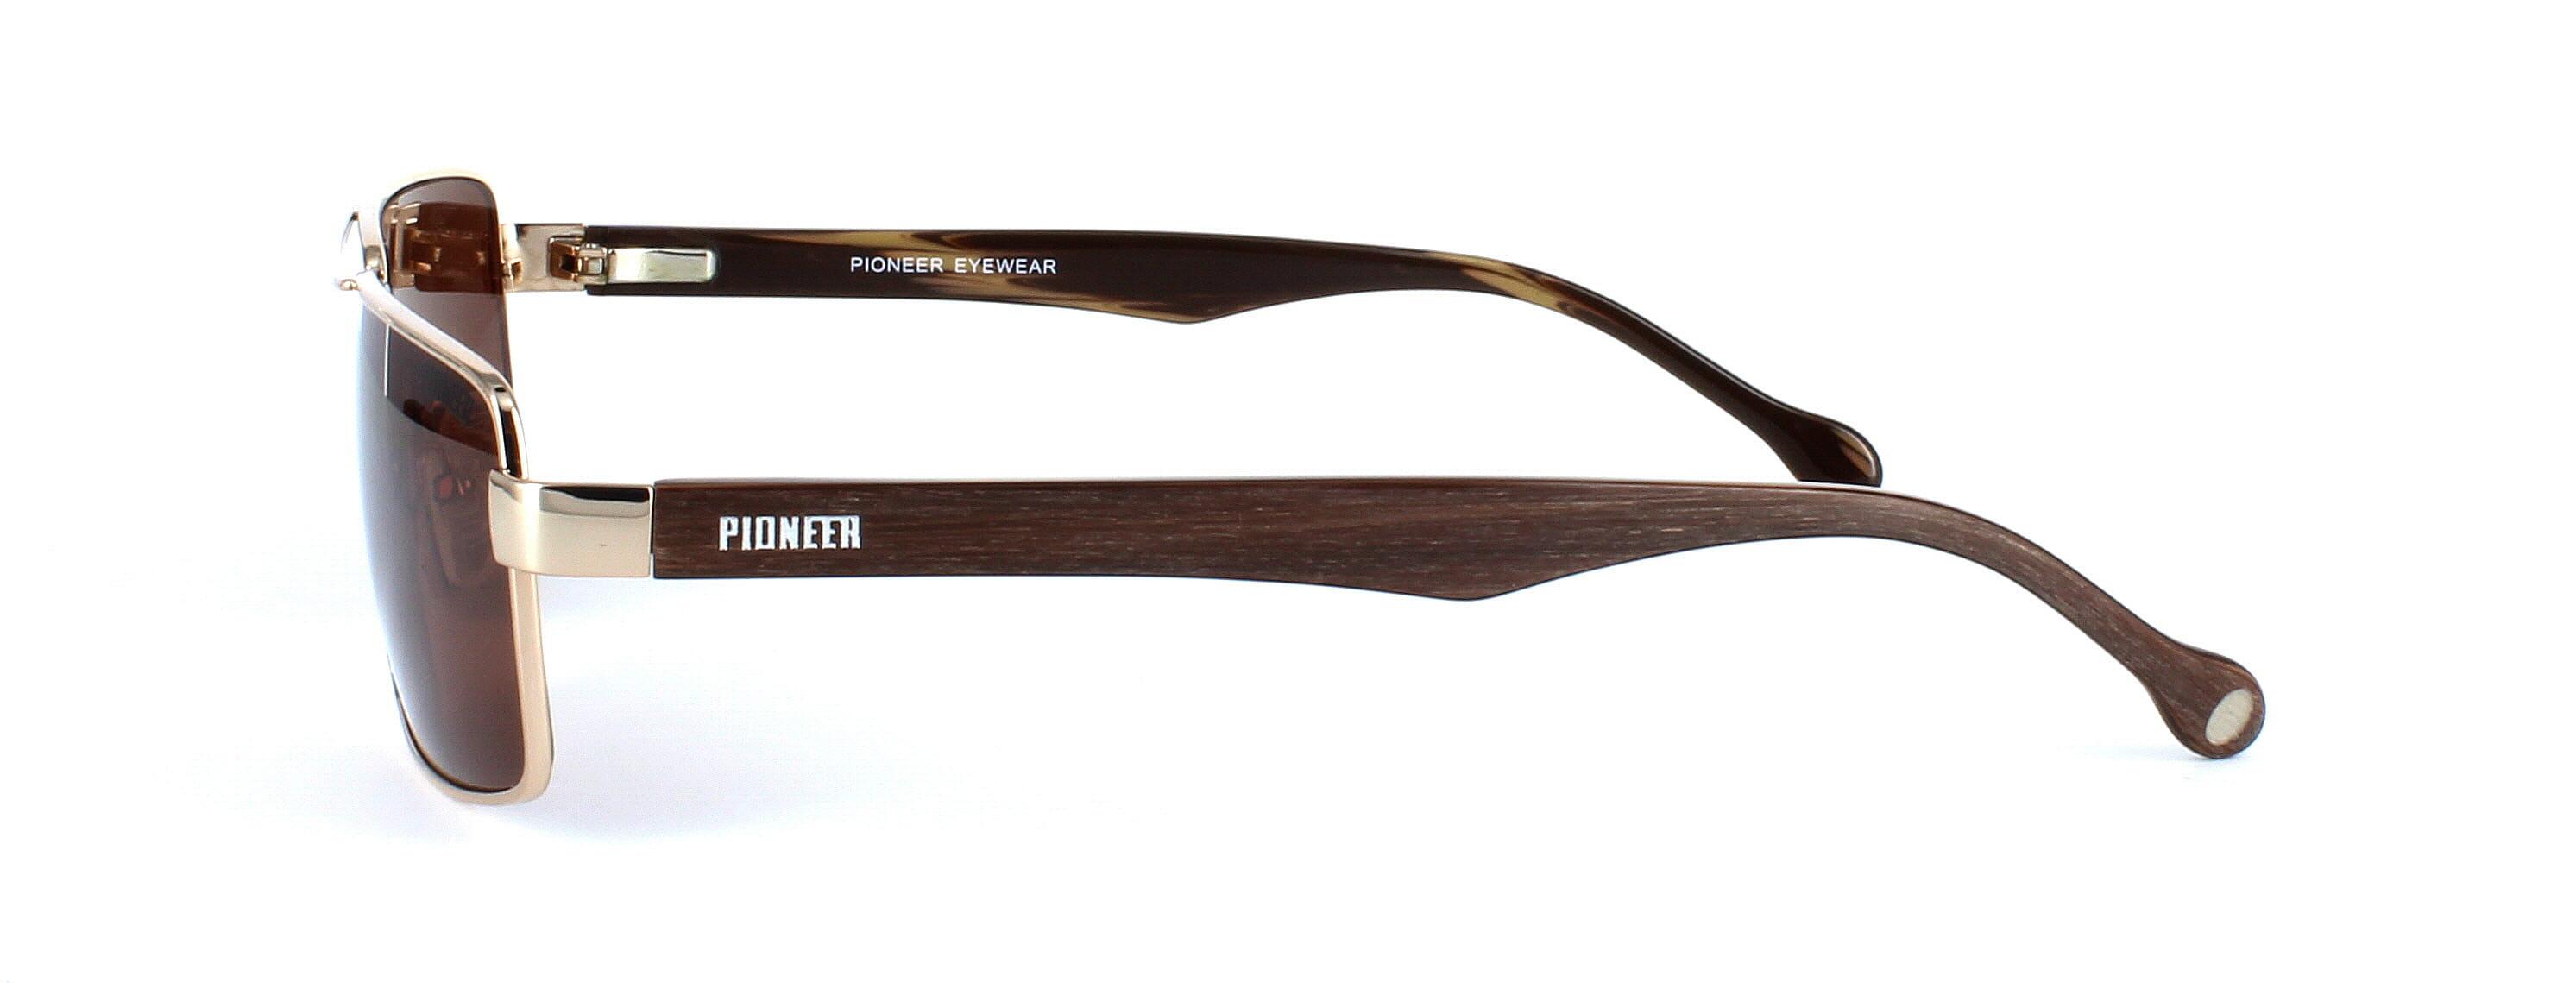 Odonata - Unisex aviator style prescription sunglasses in gold - image view 2